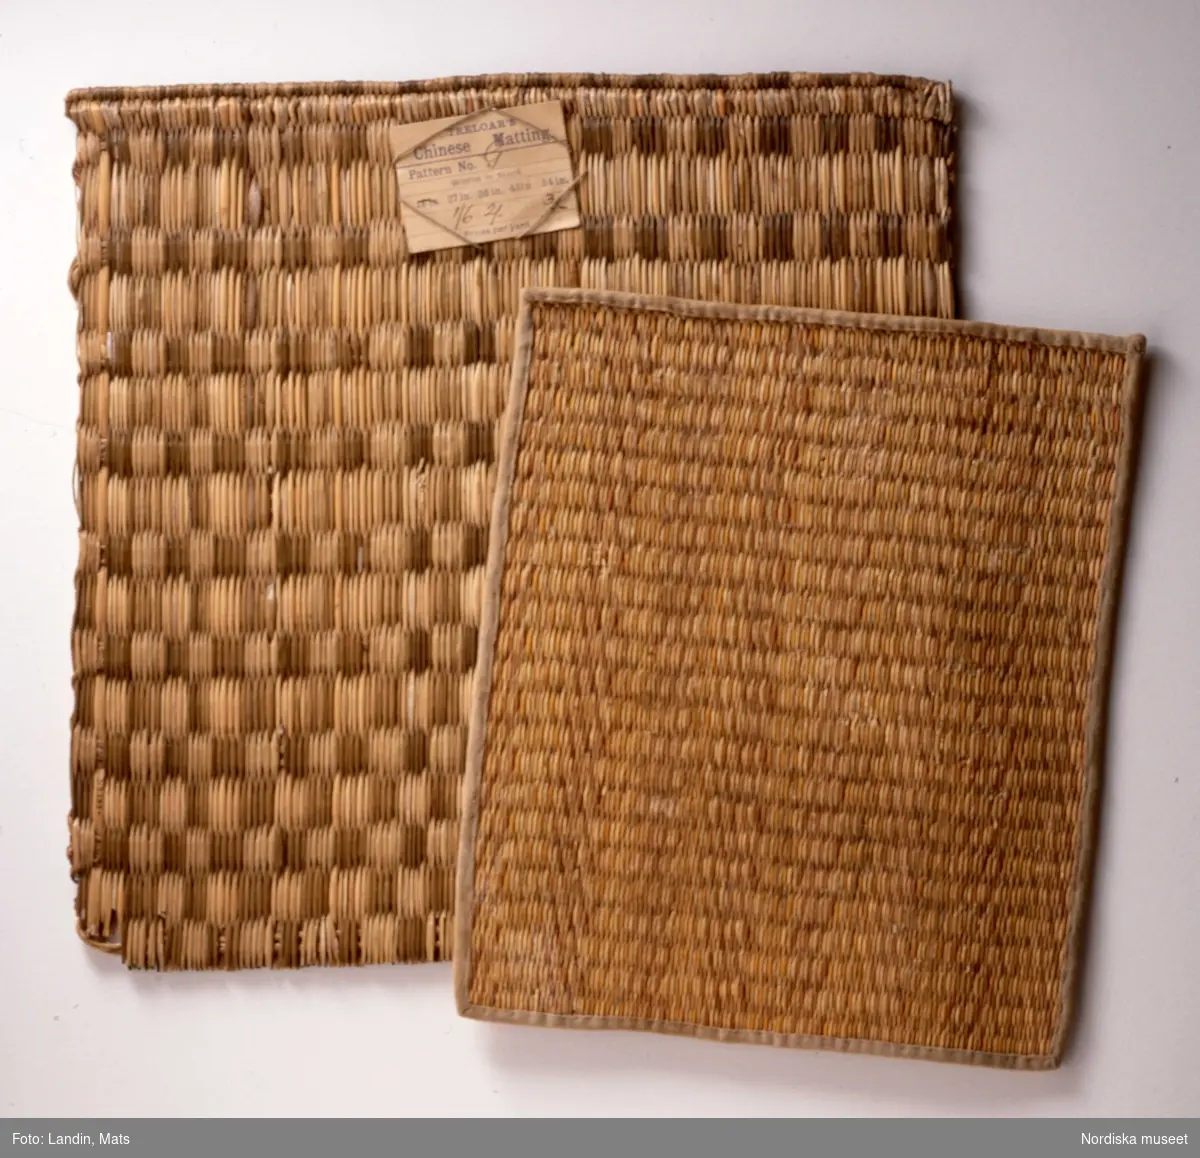 Mattprov på "Chinese matting". Mattorna användes gärna för att klä ytorna på de moderna bambumöblerna.